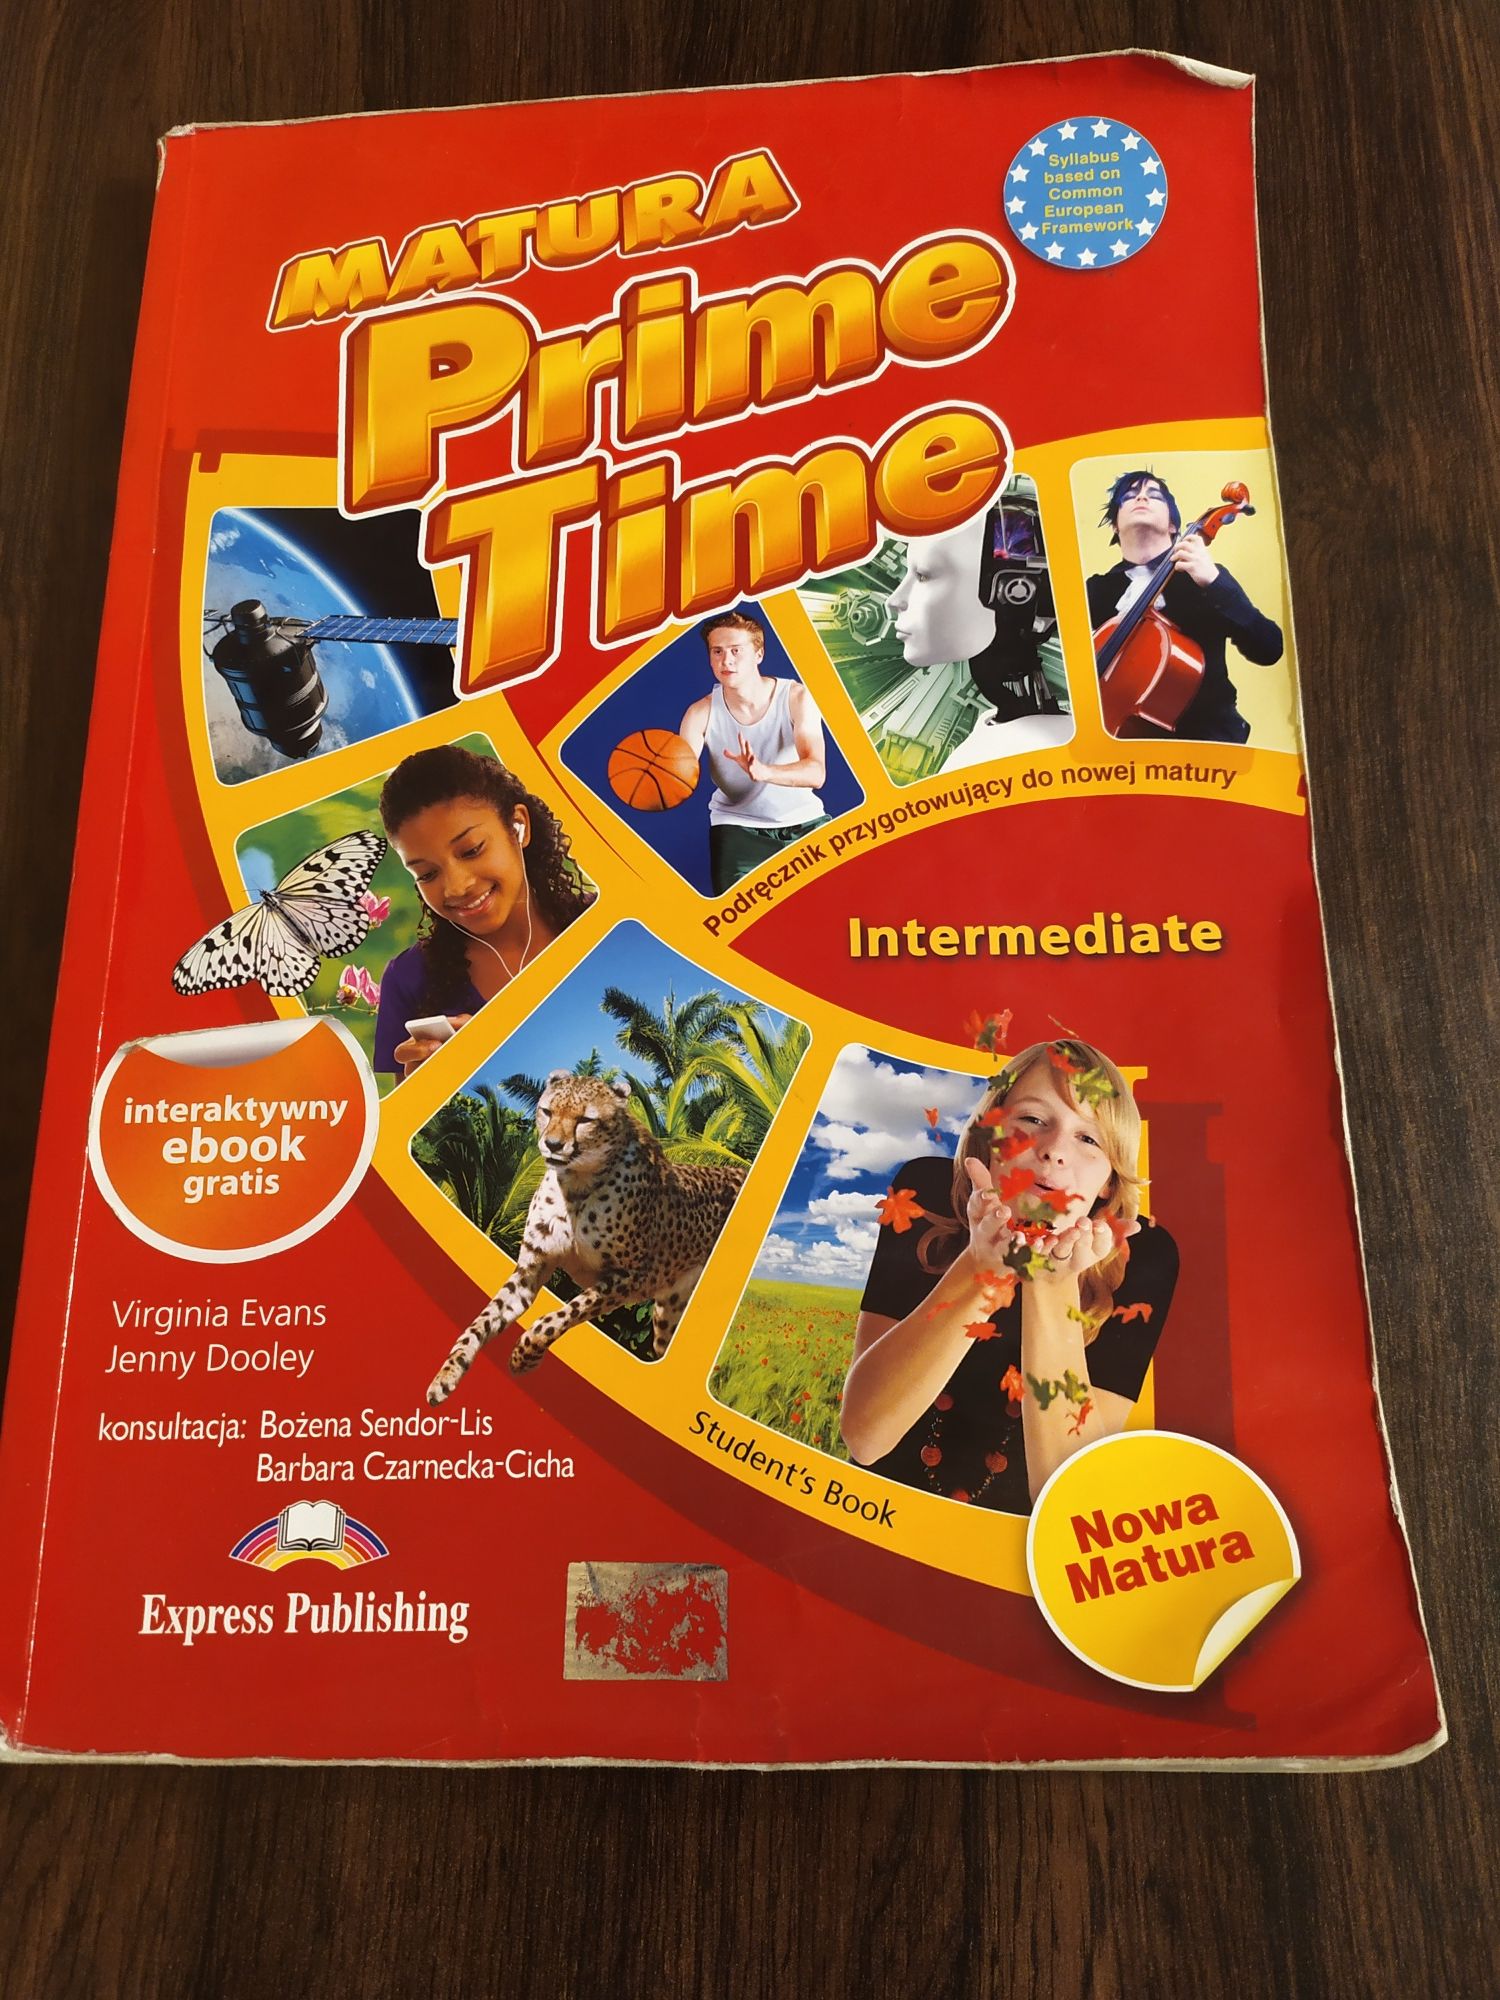 Matura prime time intermediate express publishing